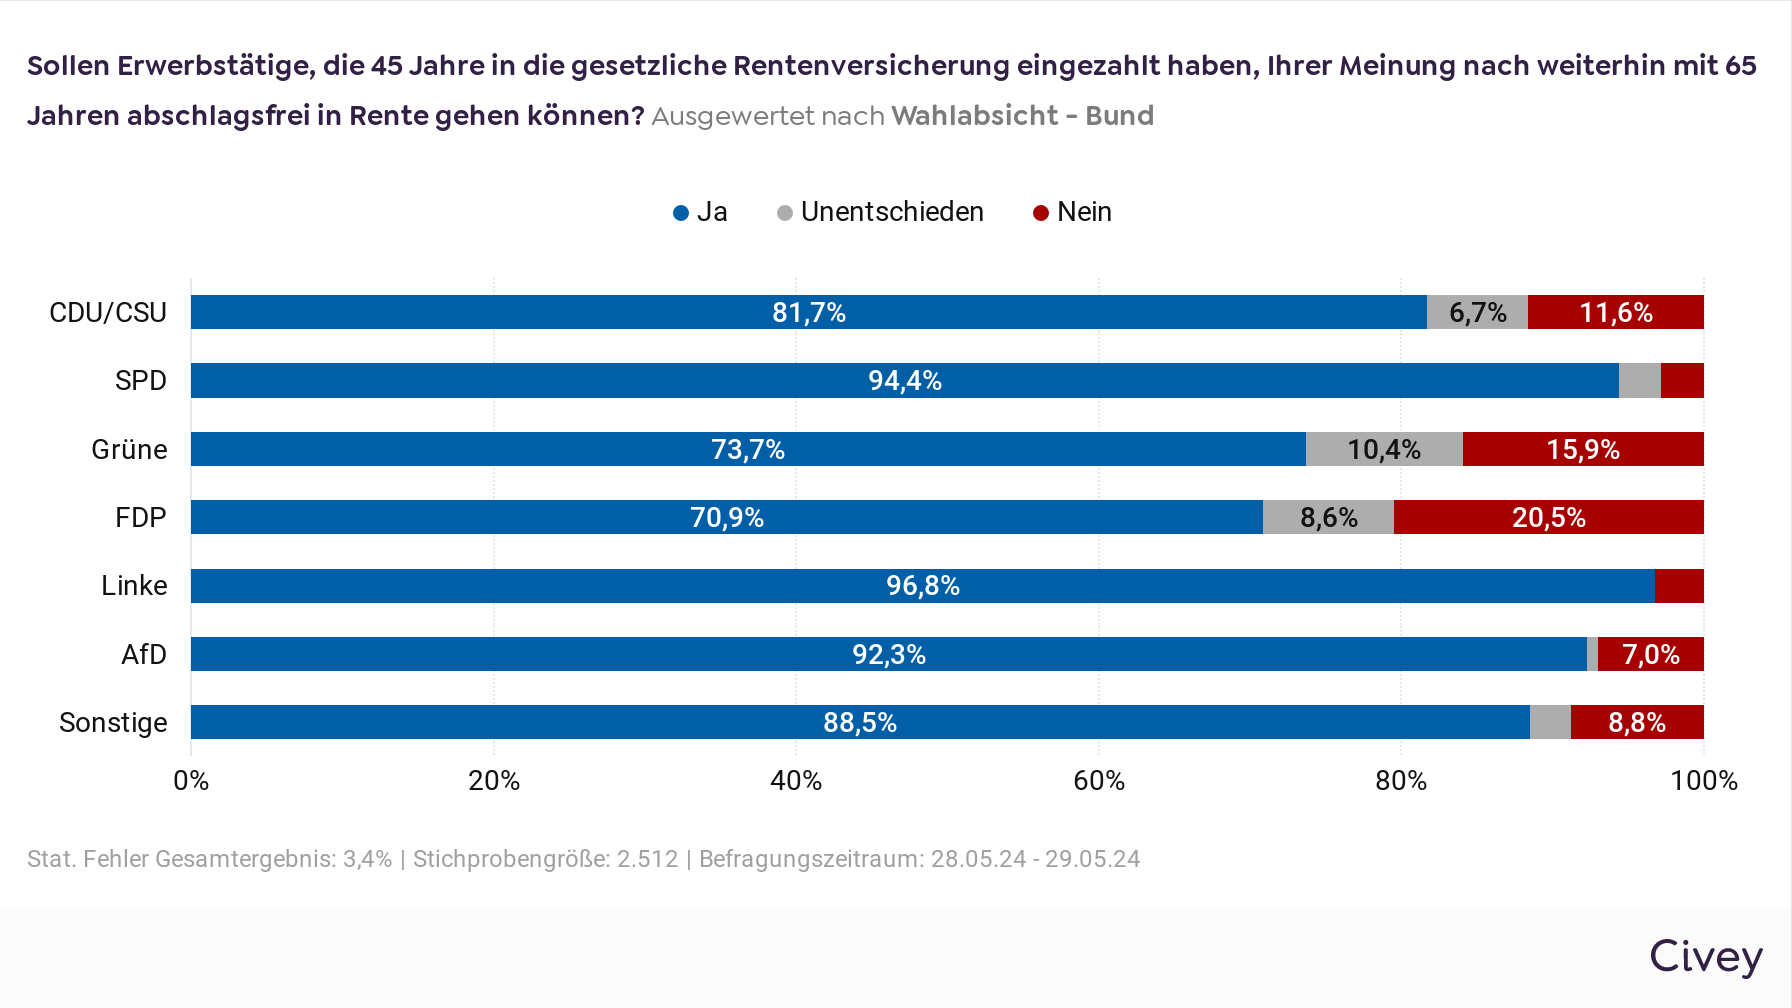 Das Balkendiagramm ist überschrieben mit der Frage der VdK-Befragung "Sollen Erwerbstätige, die 45 Jahre in die gesetzliche Rentenversicherung eingezahlt haben, Ihrer Meinung nach weiterhin mit 65 Jahren abschlagsfrei in Rente gehen können?" und zeigt die Auswertung nach der Wahlabsicht (Bund). Die Ergebnisse – CDU/CSU: 81,7 % antworteten „Ja“, 6,7 % antworteten „Unentschieden“, 11,6 % antworteten „Nein“. SPD: 94,4 % antworteten „Ja“, 2,8 % antworteten „Unentschieden“, 2,8 % antworteten „Nein“. Grüne: 73,7 % antworteten „Ja“, 10,4 % antworteten „Unentschieden“, 15,9 % antworteten „Nein“. FDP: 70,96 % antworteten „Ja“, 8,6 % antworteten „Unentschieden“, 20,5 % antworteten „Nein“. Linke: 96,8 % antworteten „Ja“, 3,2 % antworteten „Nein“. AfD: 92,3 % antworteten „Ja“, 0,7 % antworteten „Unentschieden“, 7,0 % antworteten „Nein“. Sonstige: 88,5 % antworteten „Ja“, 2,7 % antworteten „Unentschieden“, 8,8 % antworteten „Nein“. 